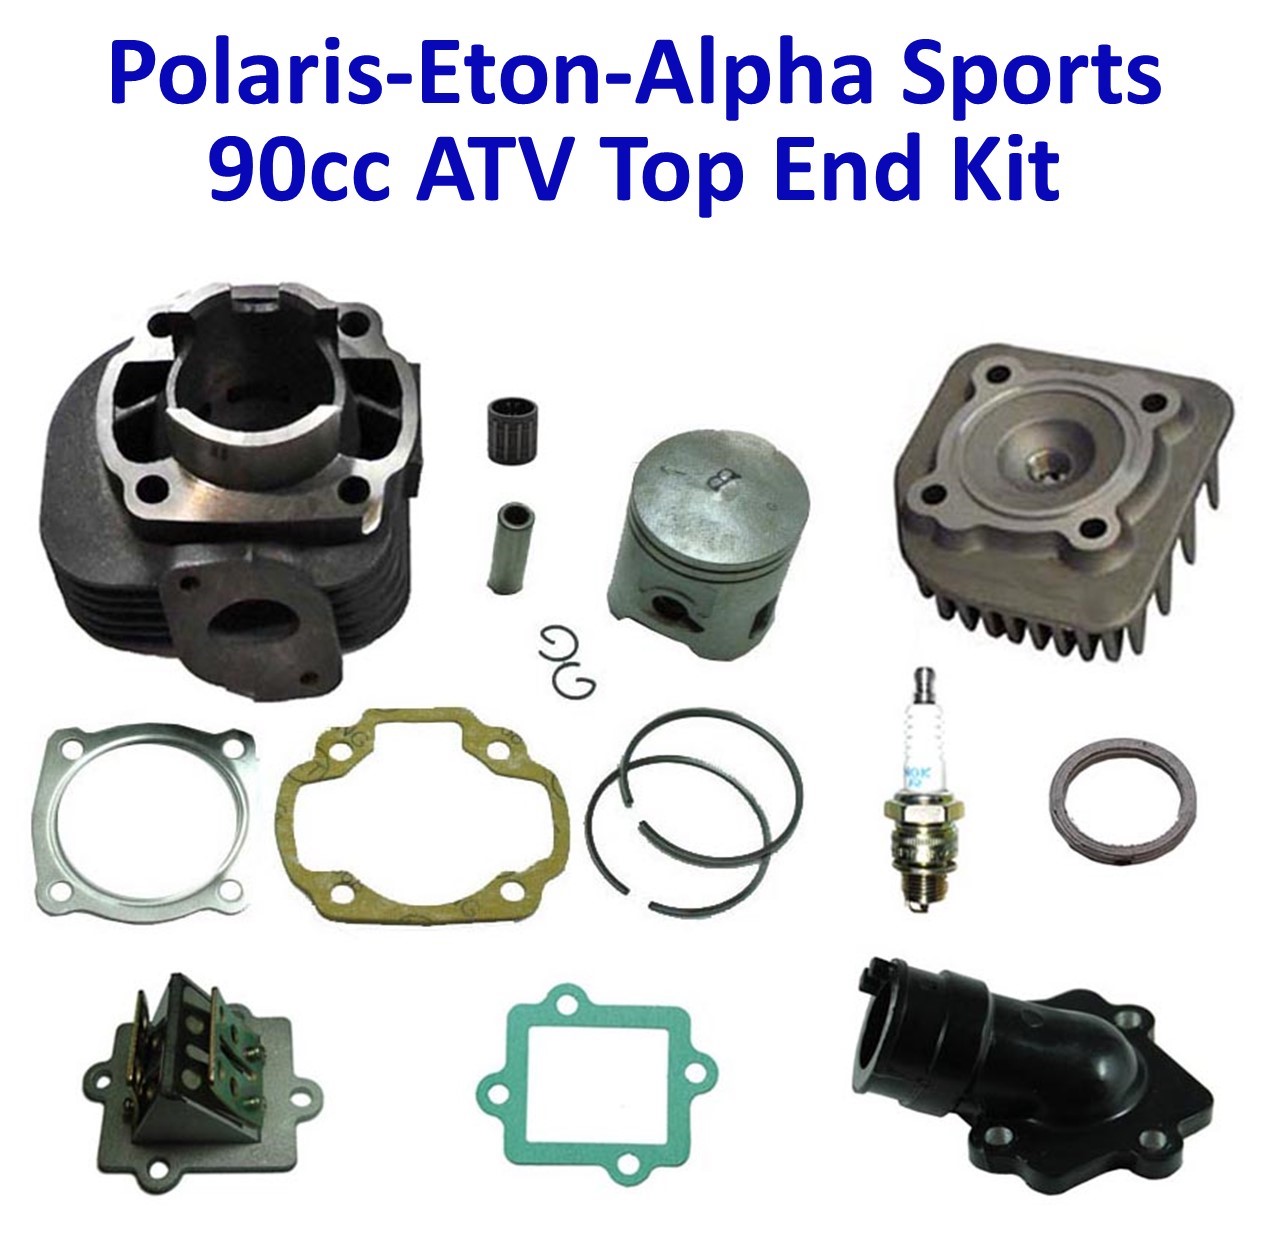 Polaris-Eton-Alpha Sports 90cc 2 Stroke Top End Cylinder Kit